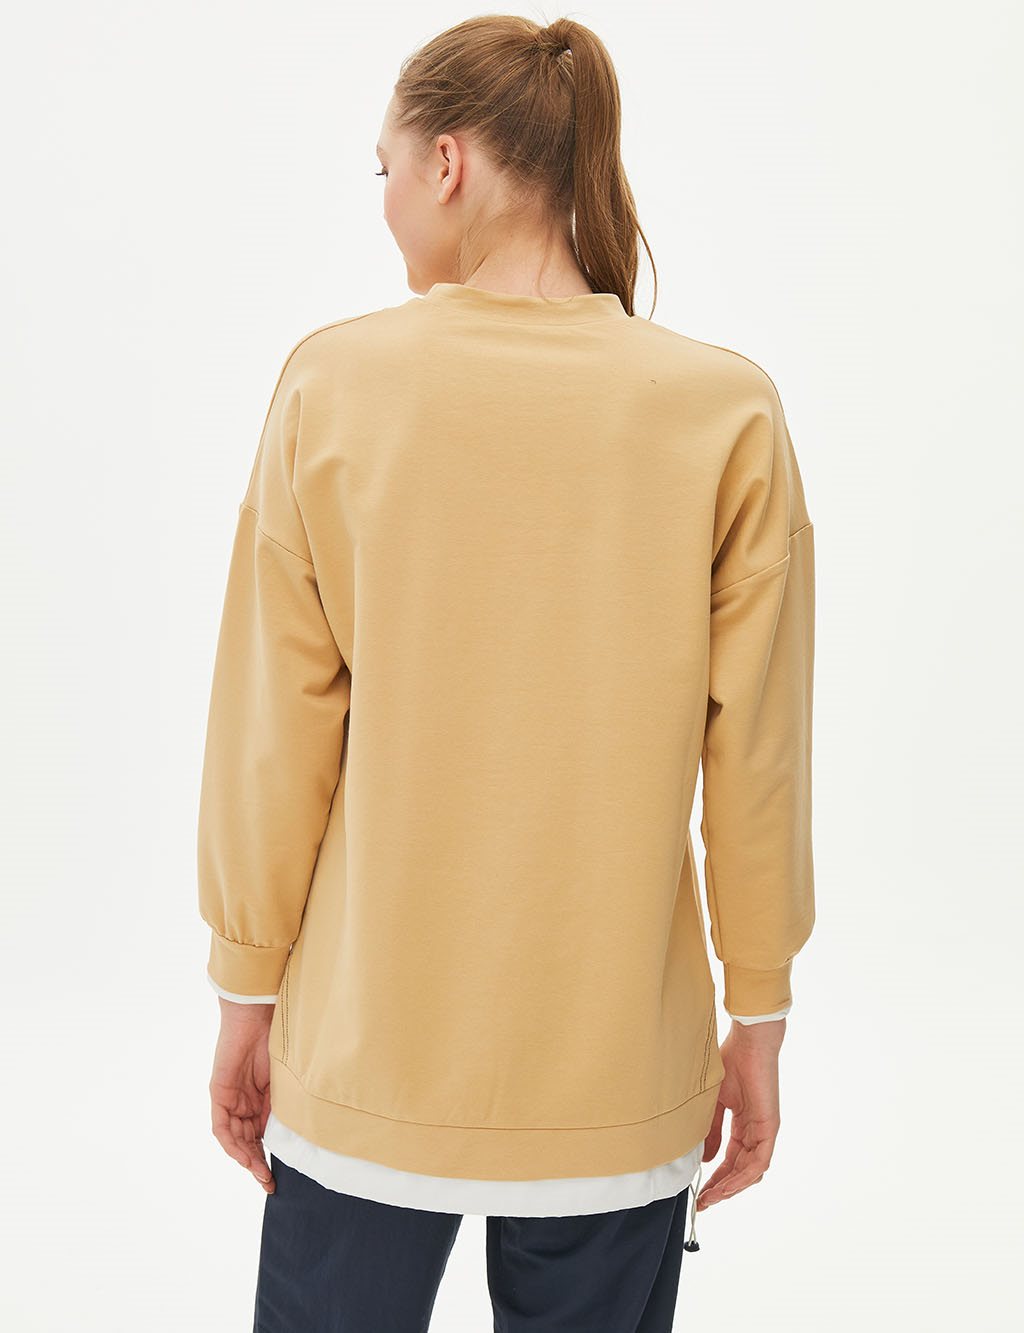 Katman Görünümlü Parçalı Sweatshirt Bej 